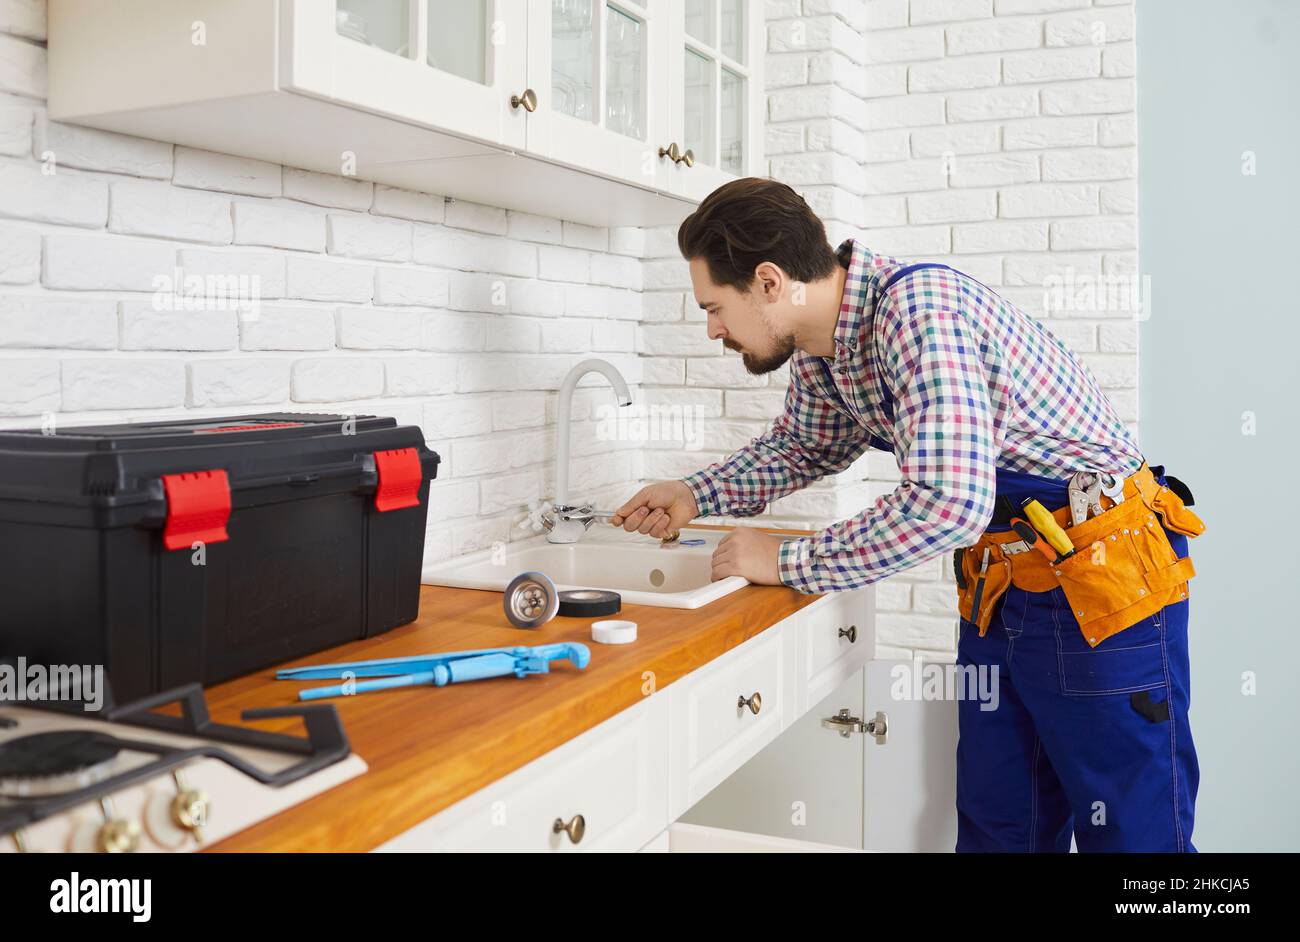 Professioneller Klempner installiert oder repariert Wasserhahn und Waschbecken in der Küche der Wohnung. Stockfoto